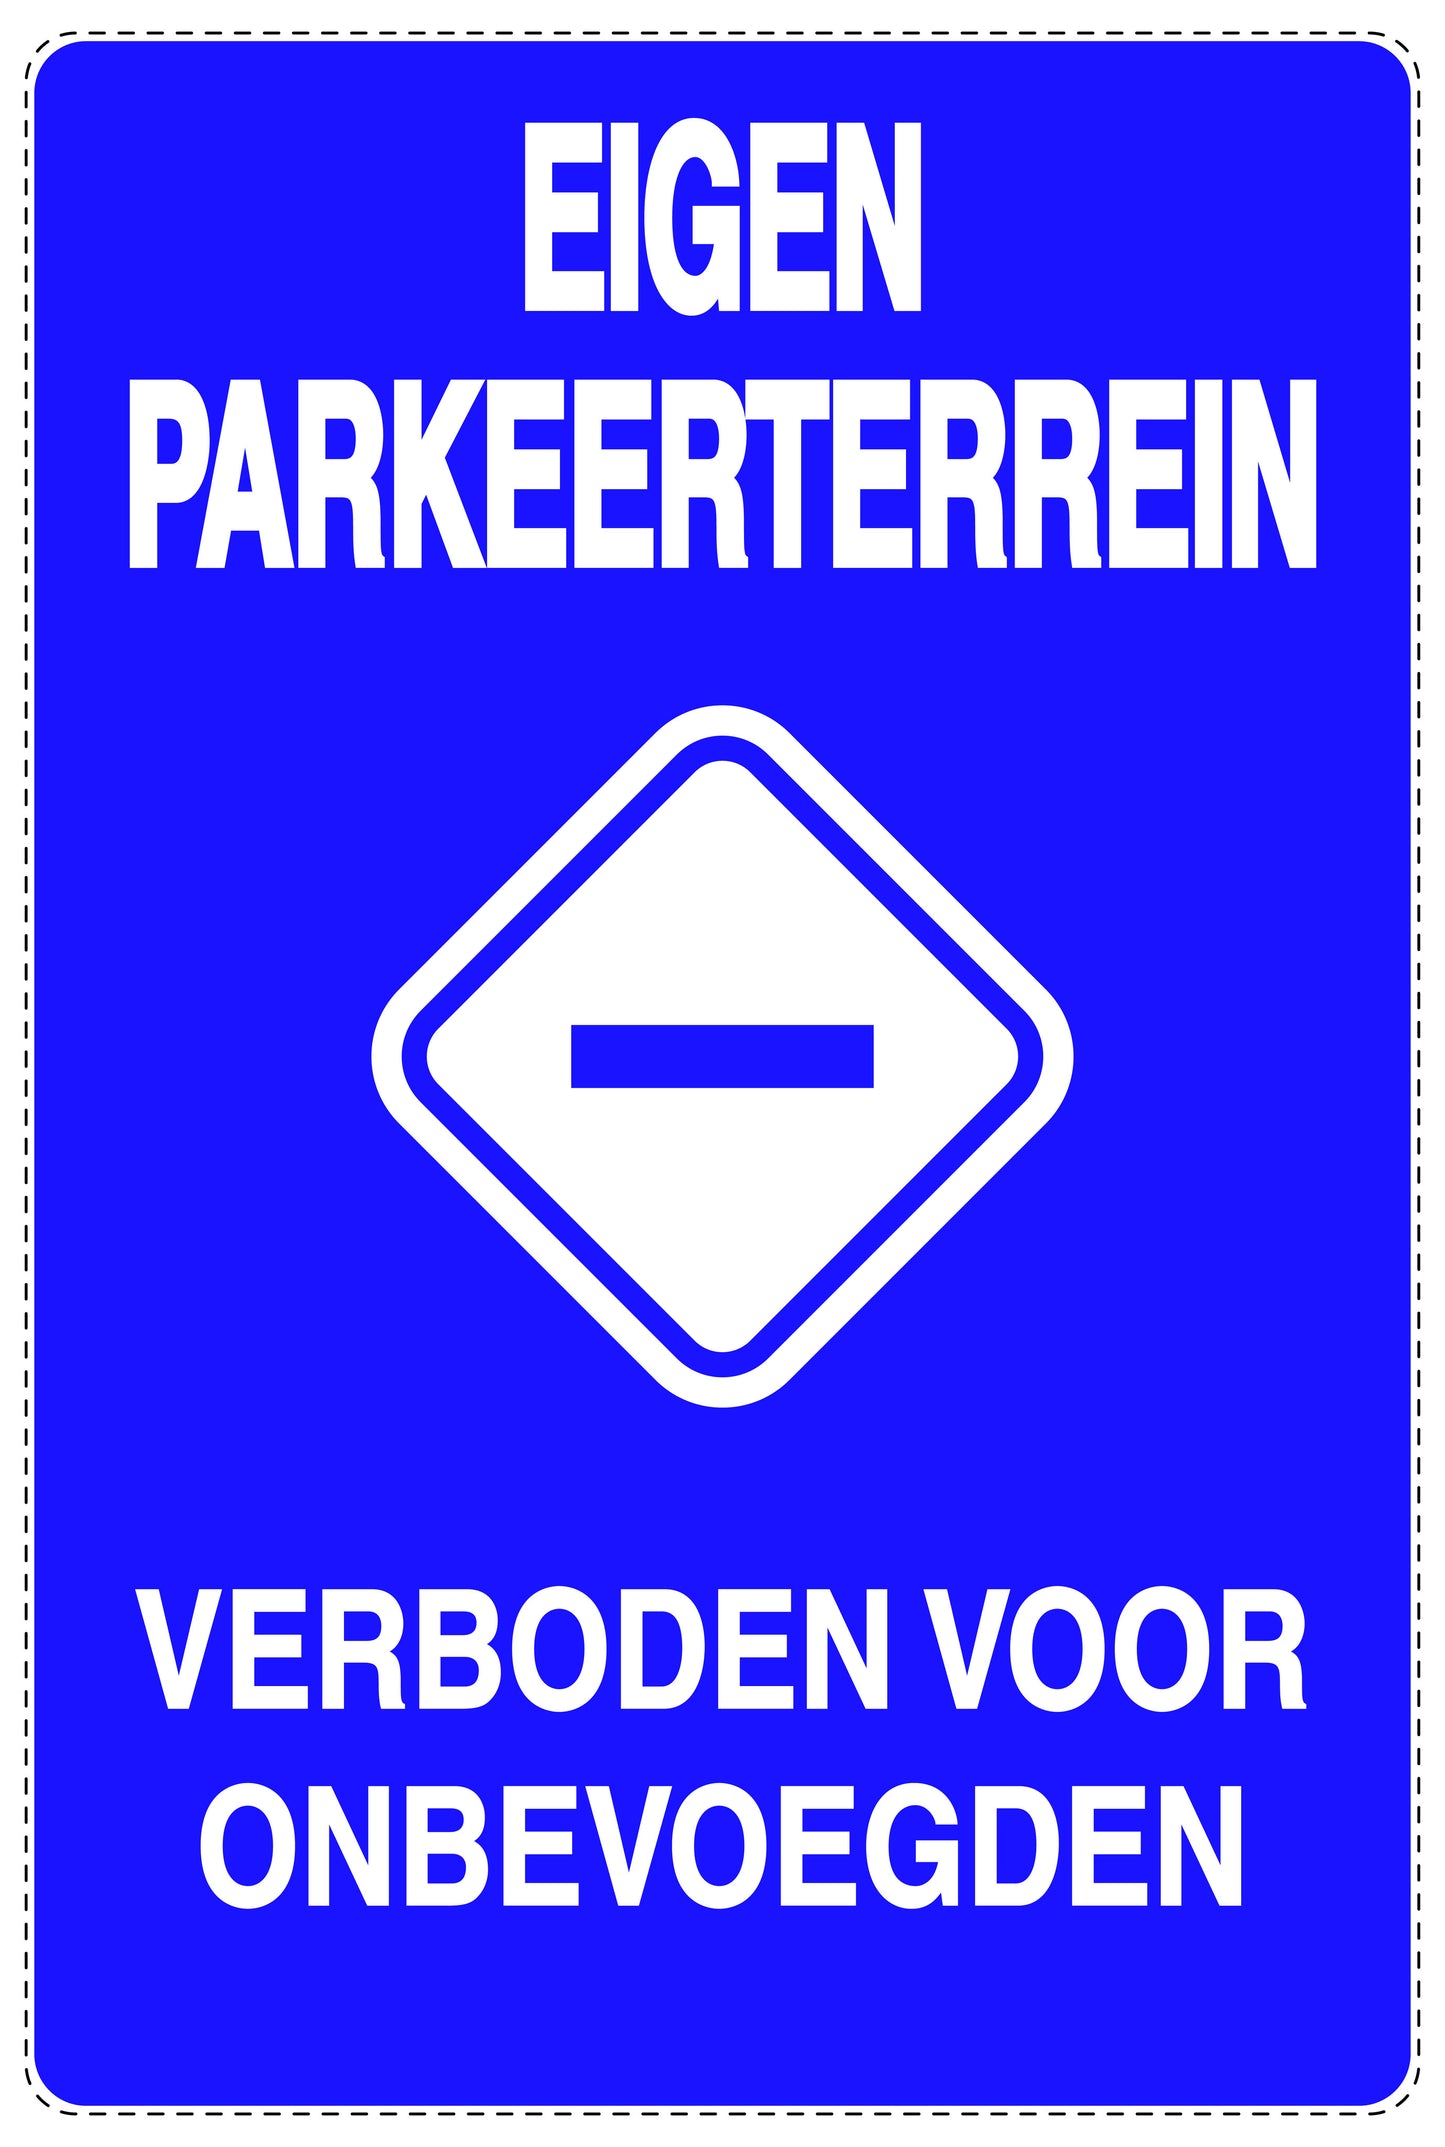 Niet parkeren Sticker "Eigen parkeerterrein verboden voor onbevoegden" EW-NPRK-2180-44